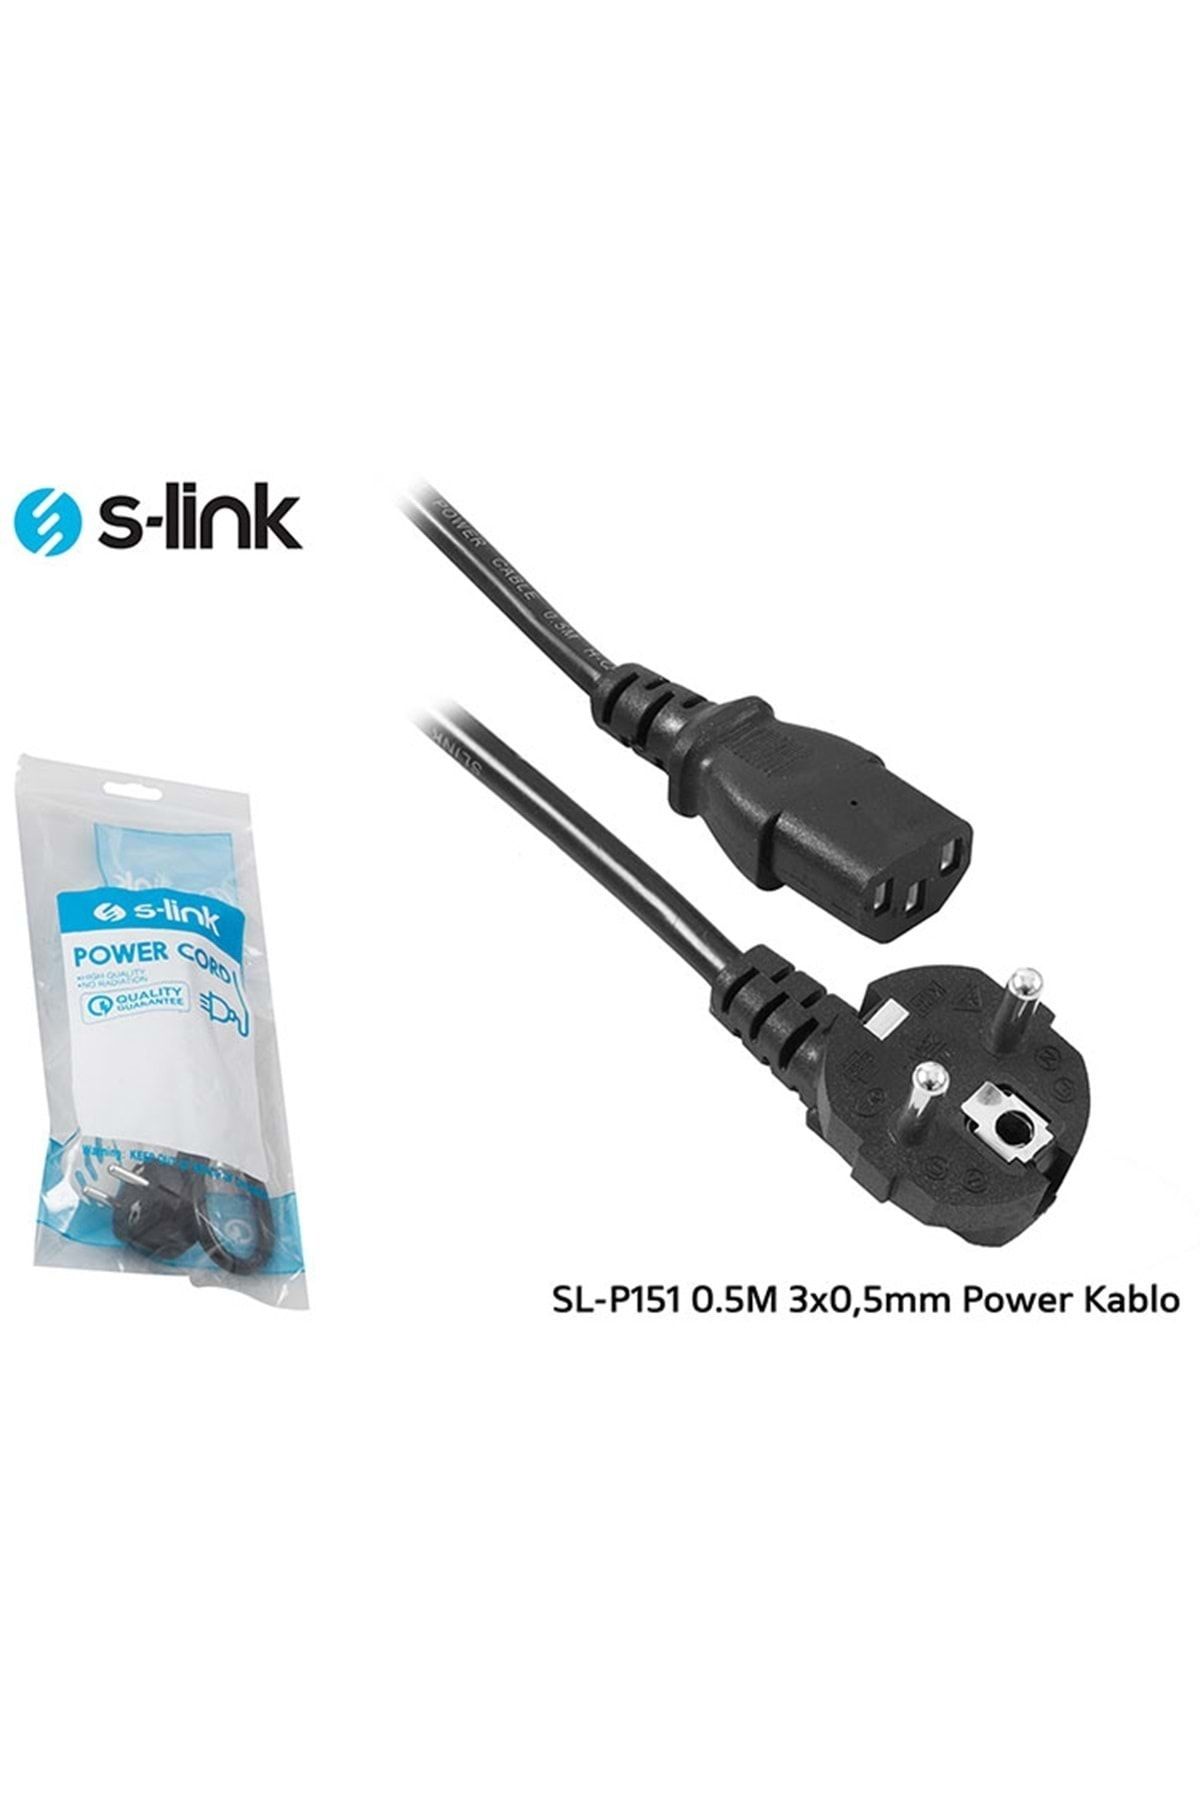 S-Link Swapp S-link Sl-p151 0.5m 3x0,5mm Pc Power Kablo